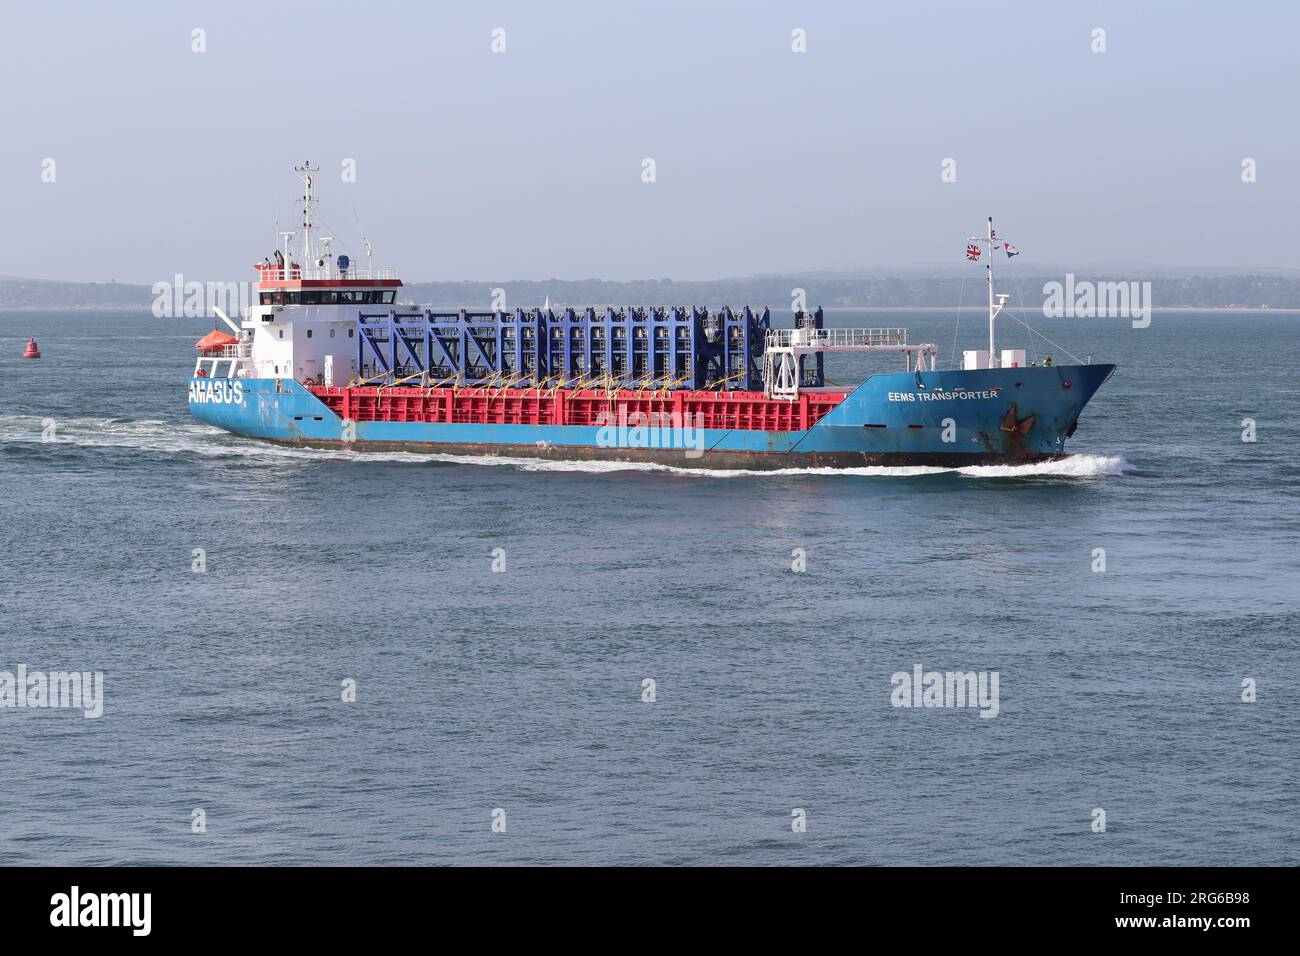 Das Frachtschiff MV EMS TRANSPORTER, das kurz vor dem Einlaufen in den Hafen steht Stockfoto